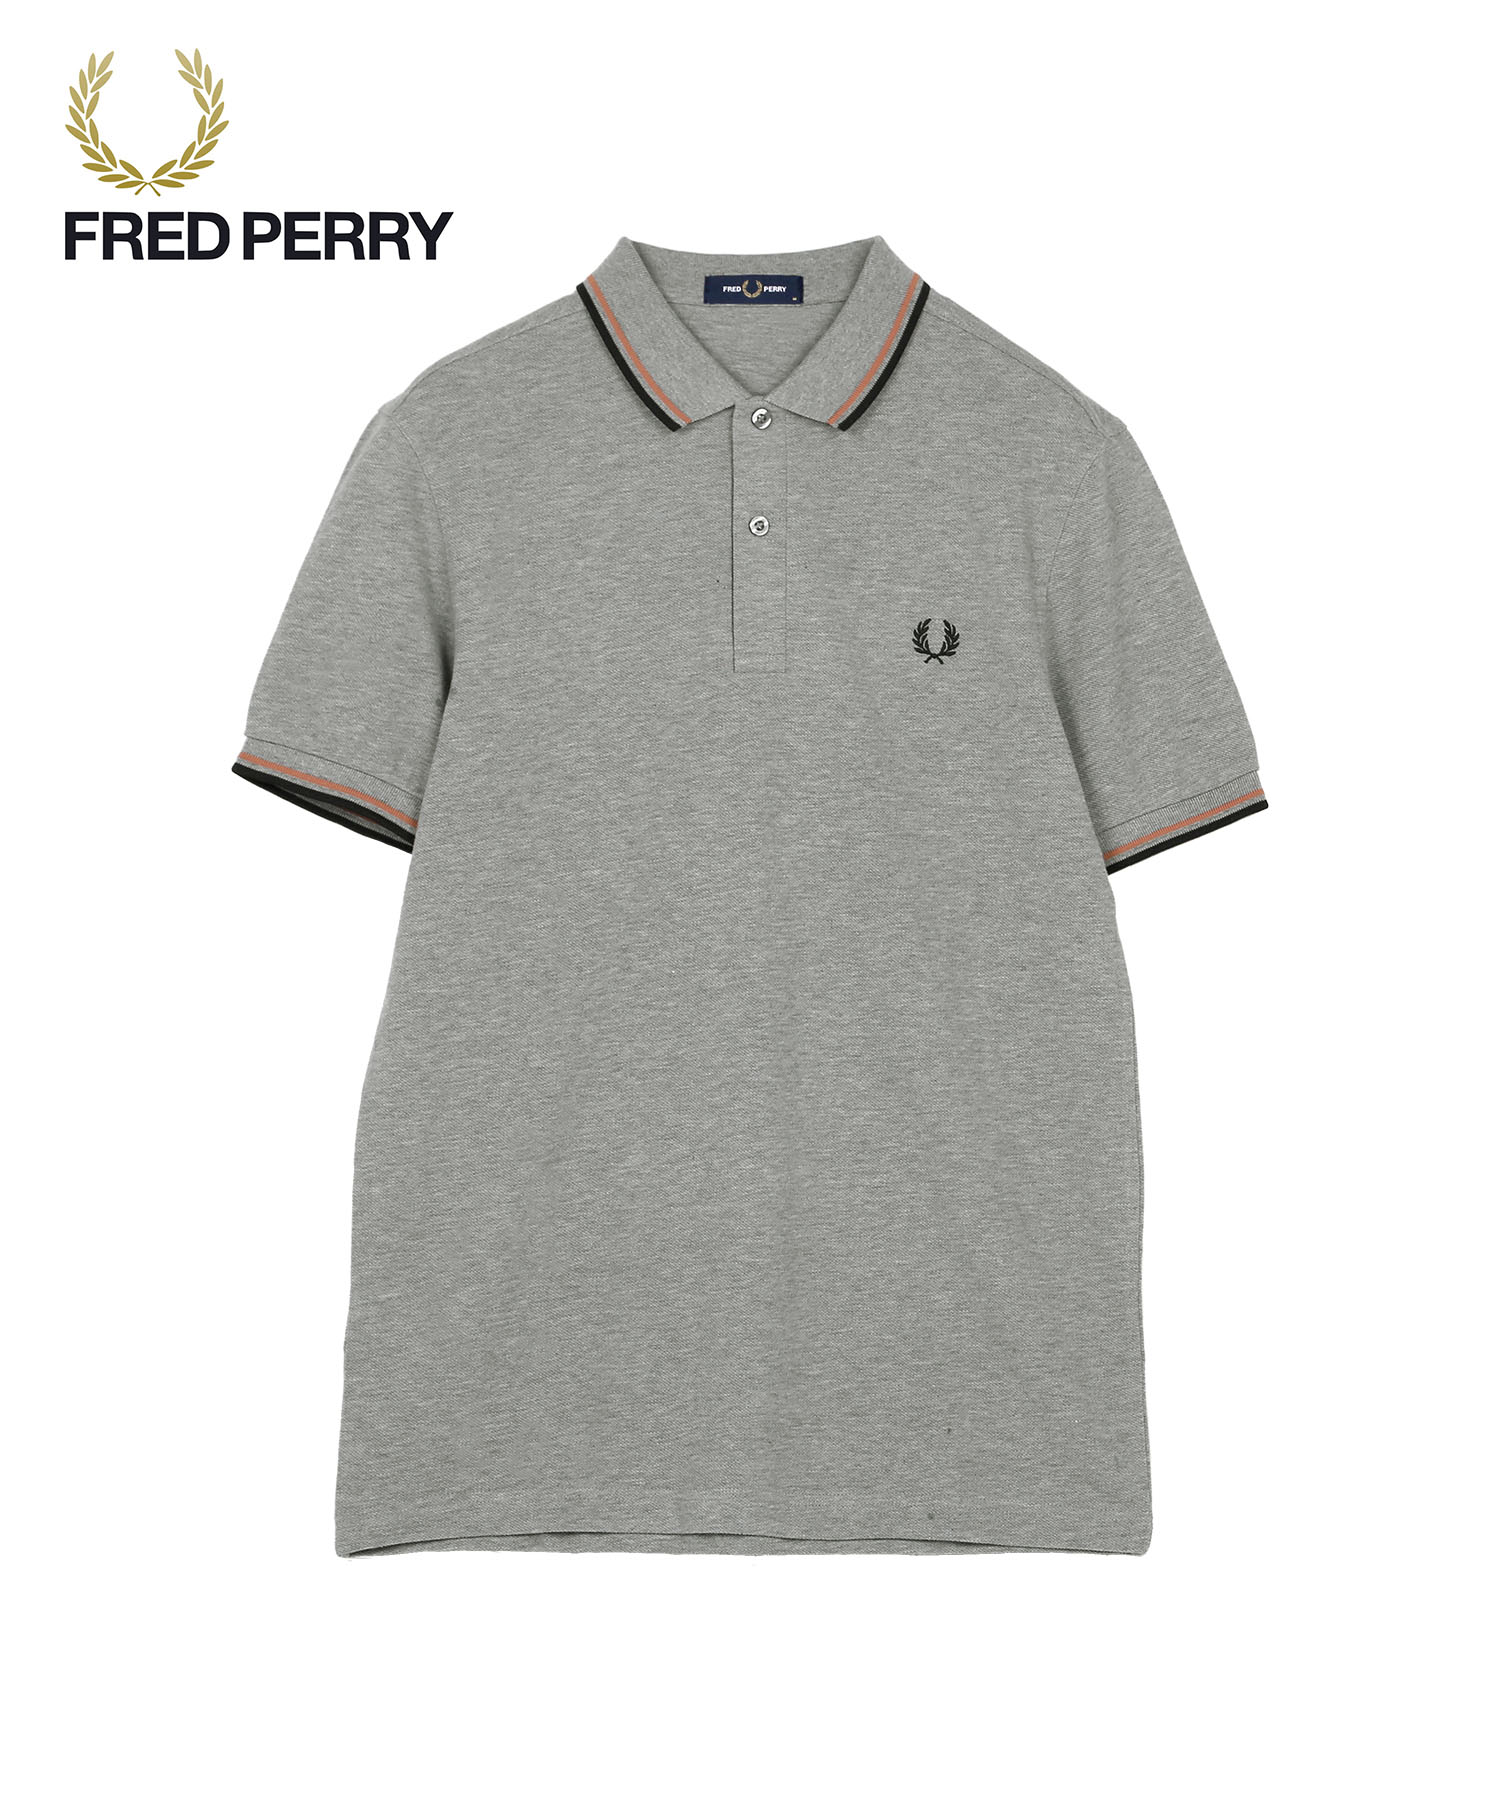 フレッドペリー FRED PERRY ポロシャツ メンズ 紳士 綿100% コットン 無地 ゴルフ ...